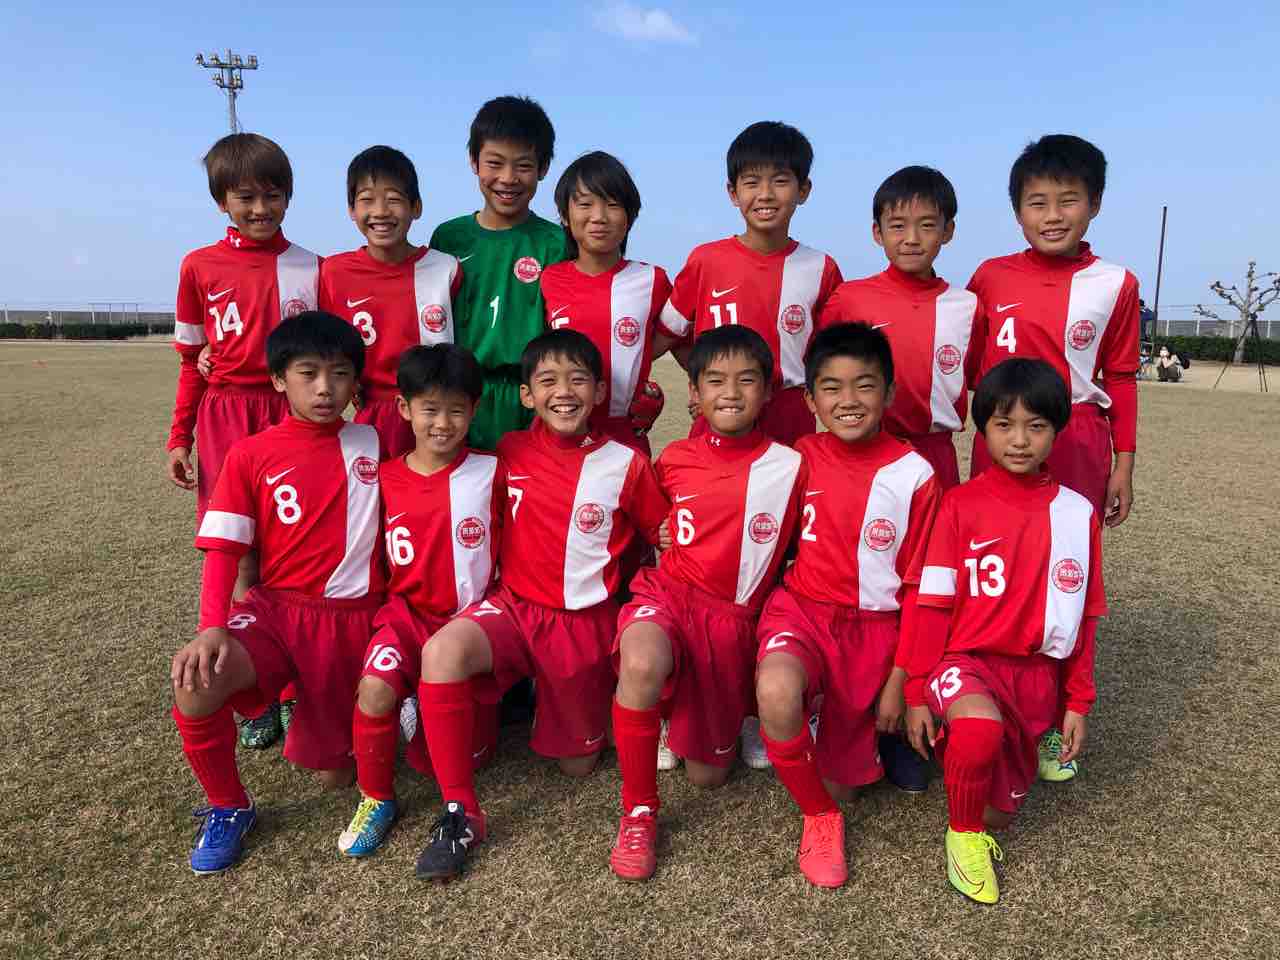 アイリスオーヤマ プレミアリーグ愛媛uｰ11 松山サッカースクール 美しく勝利せよ